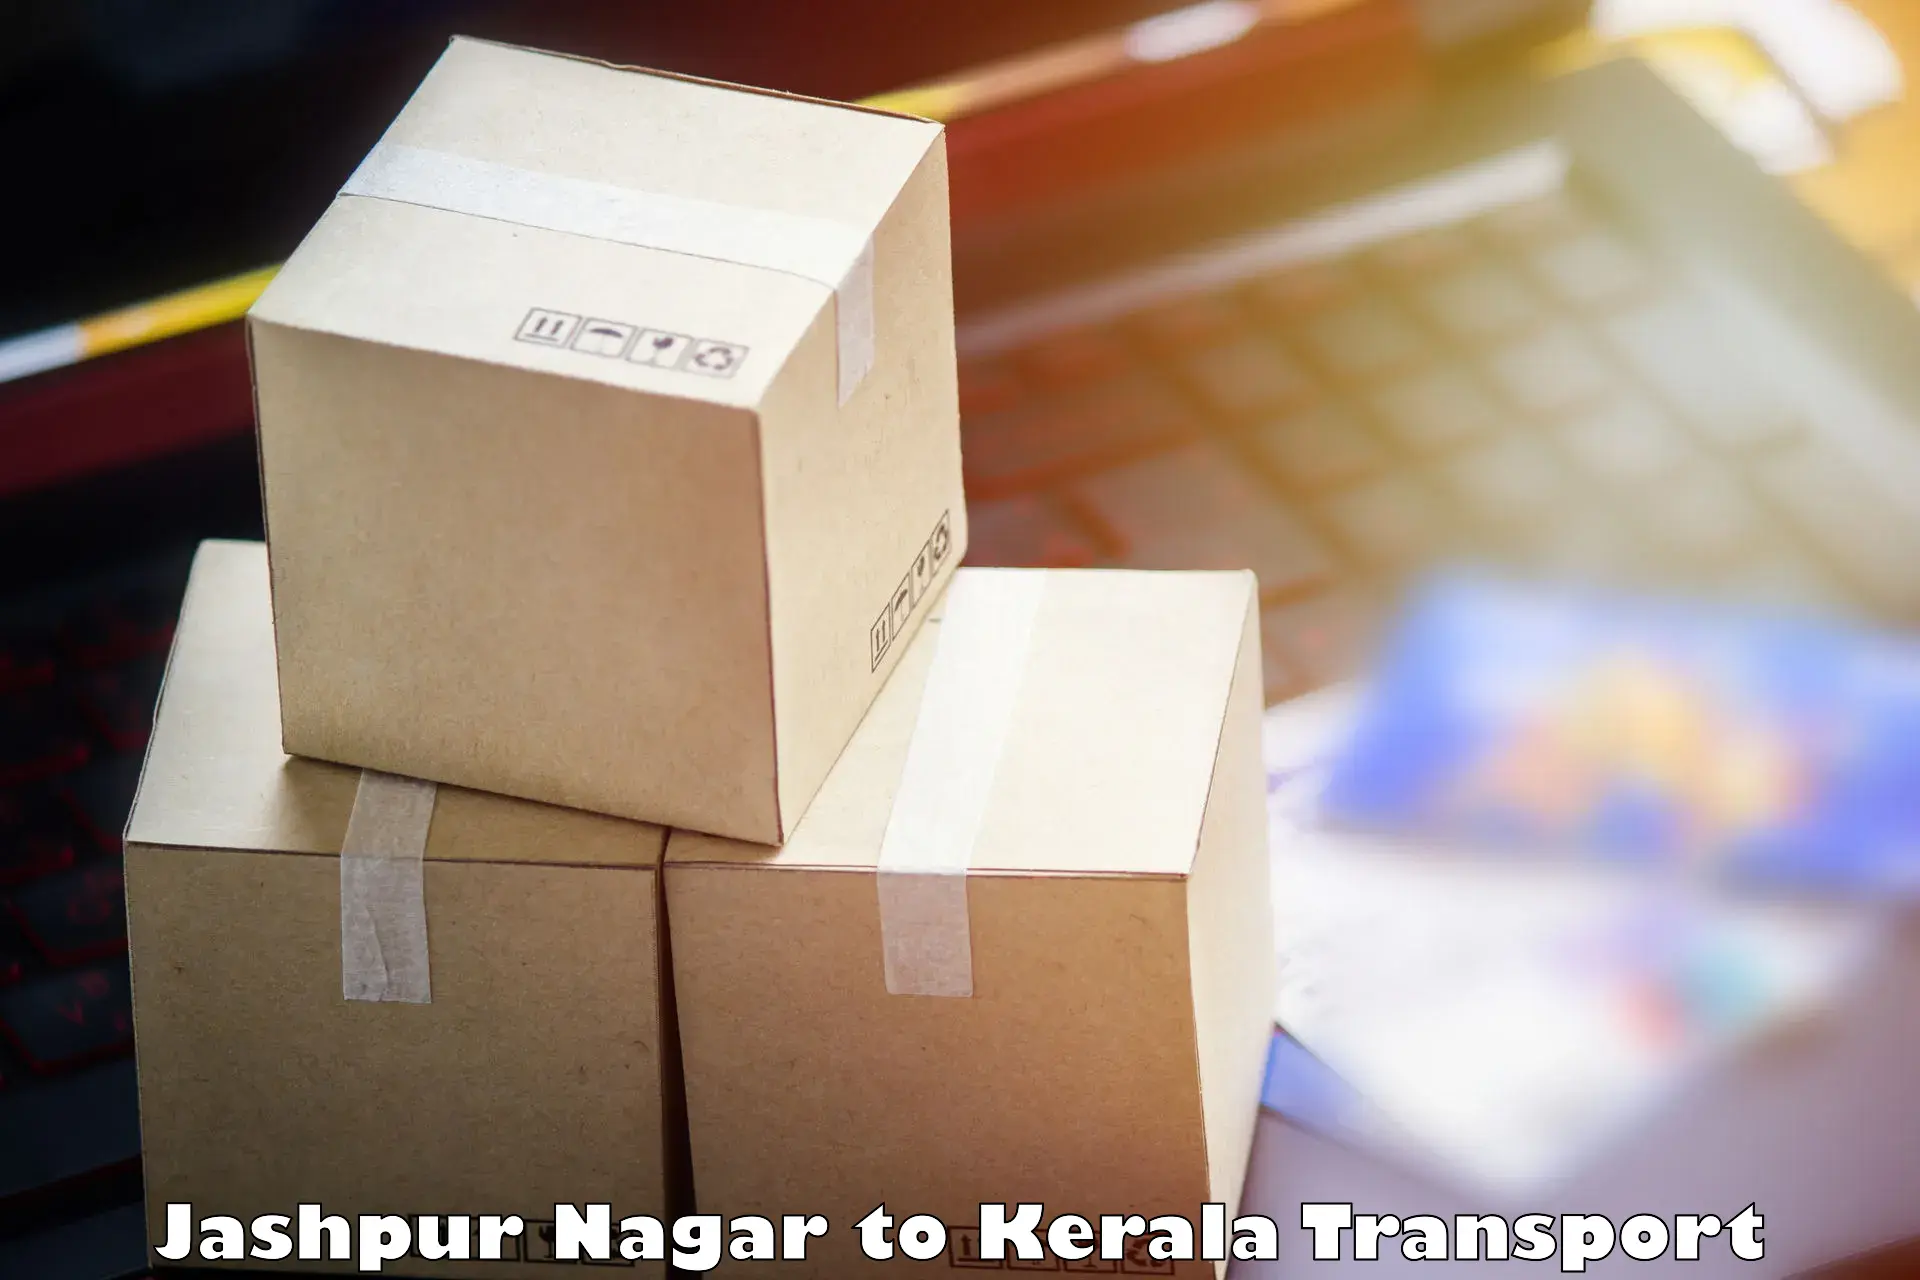 Transportation services Jashpur Nagar to Kerala